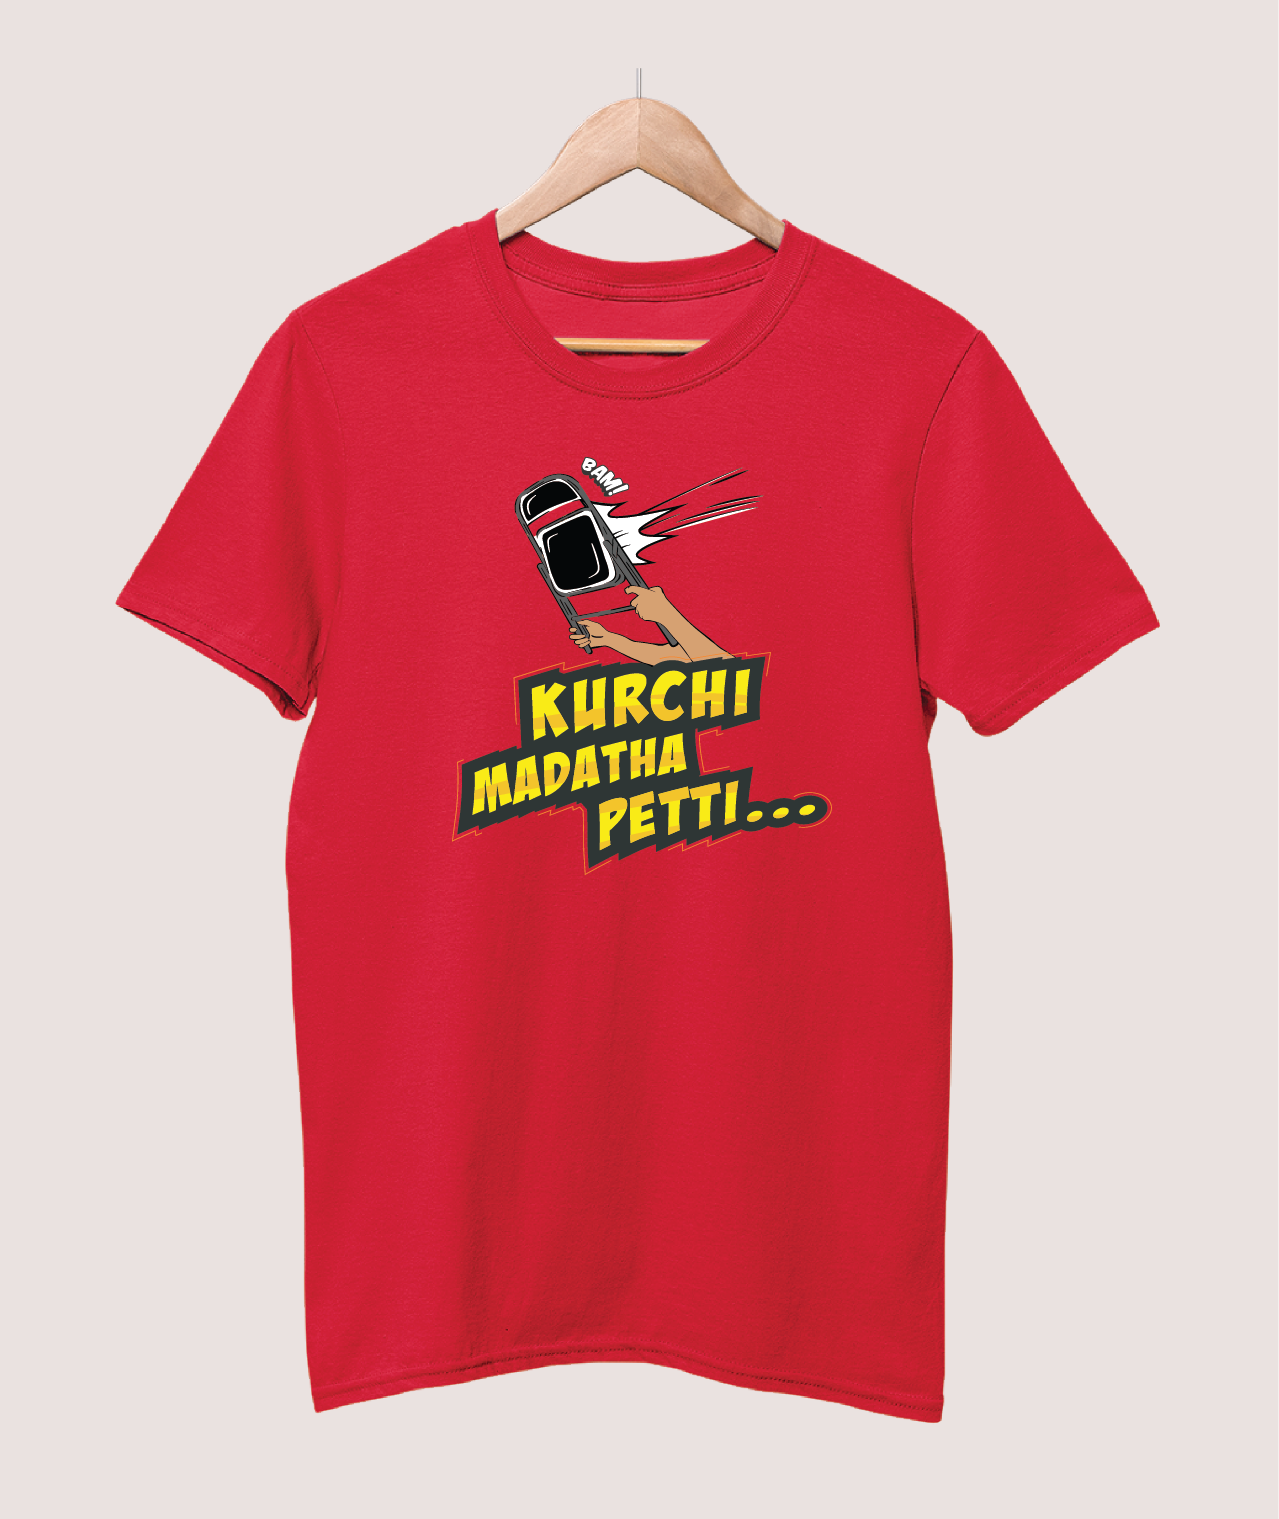 Kurchi Madatha Petti T-shirt